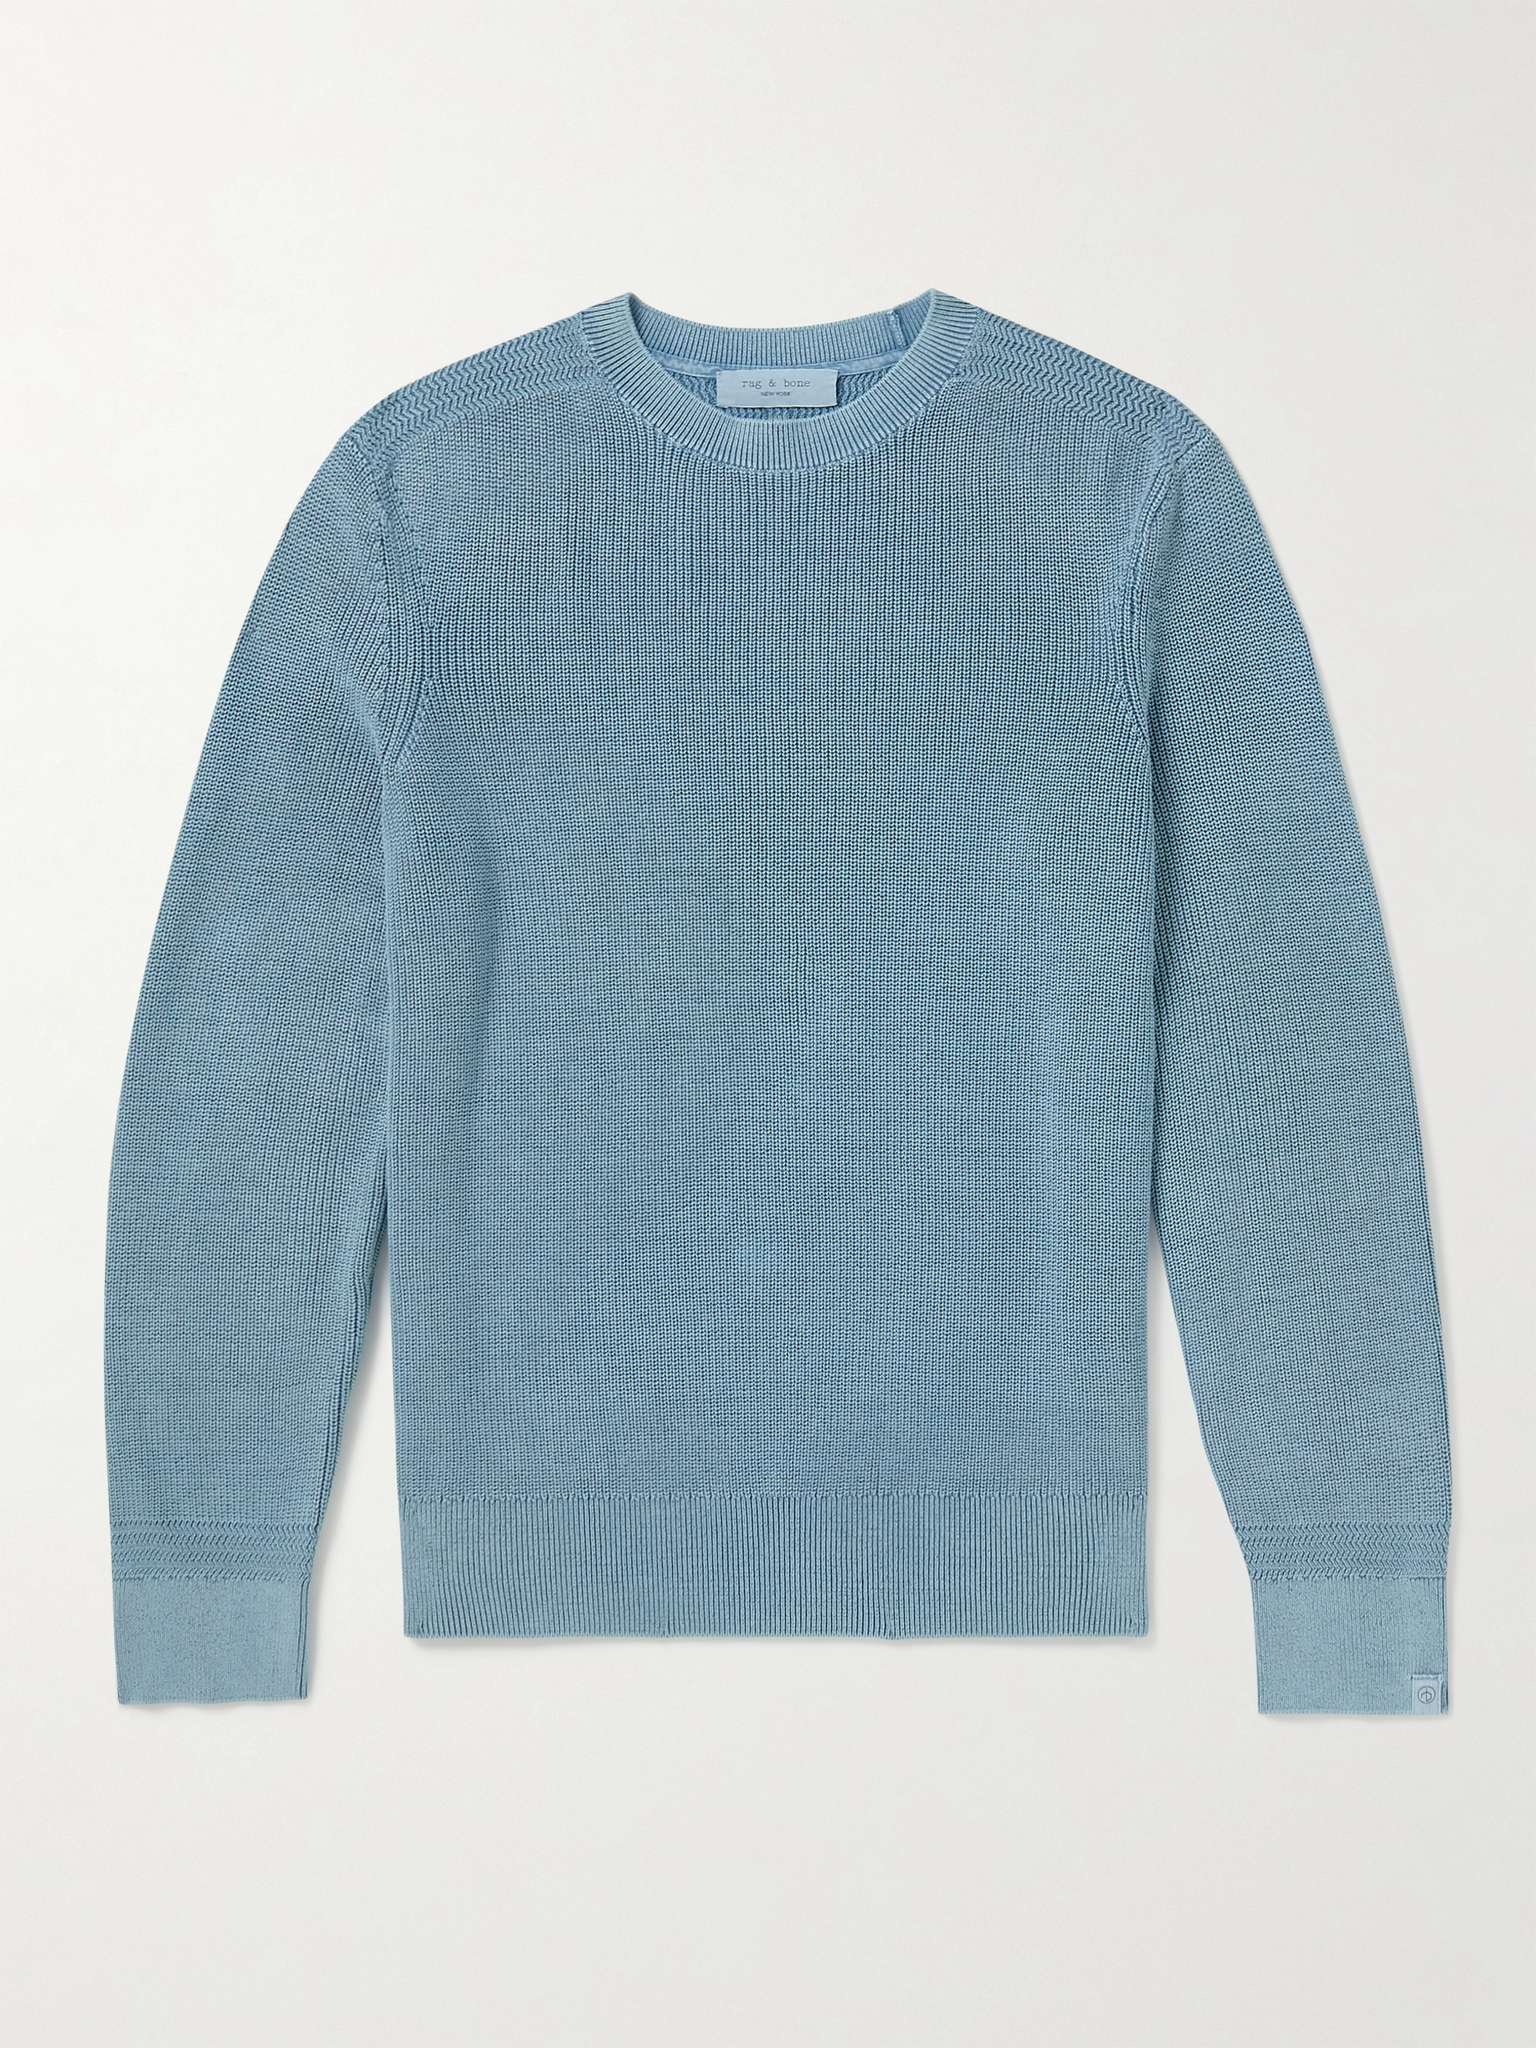 RAG & BONE Dexter Ribbed Cotton Sweater for Men | MR PORTER